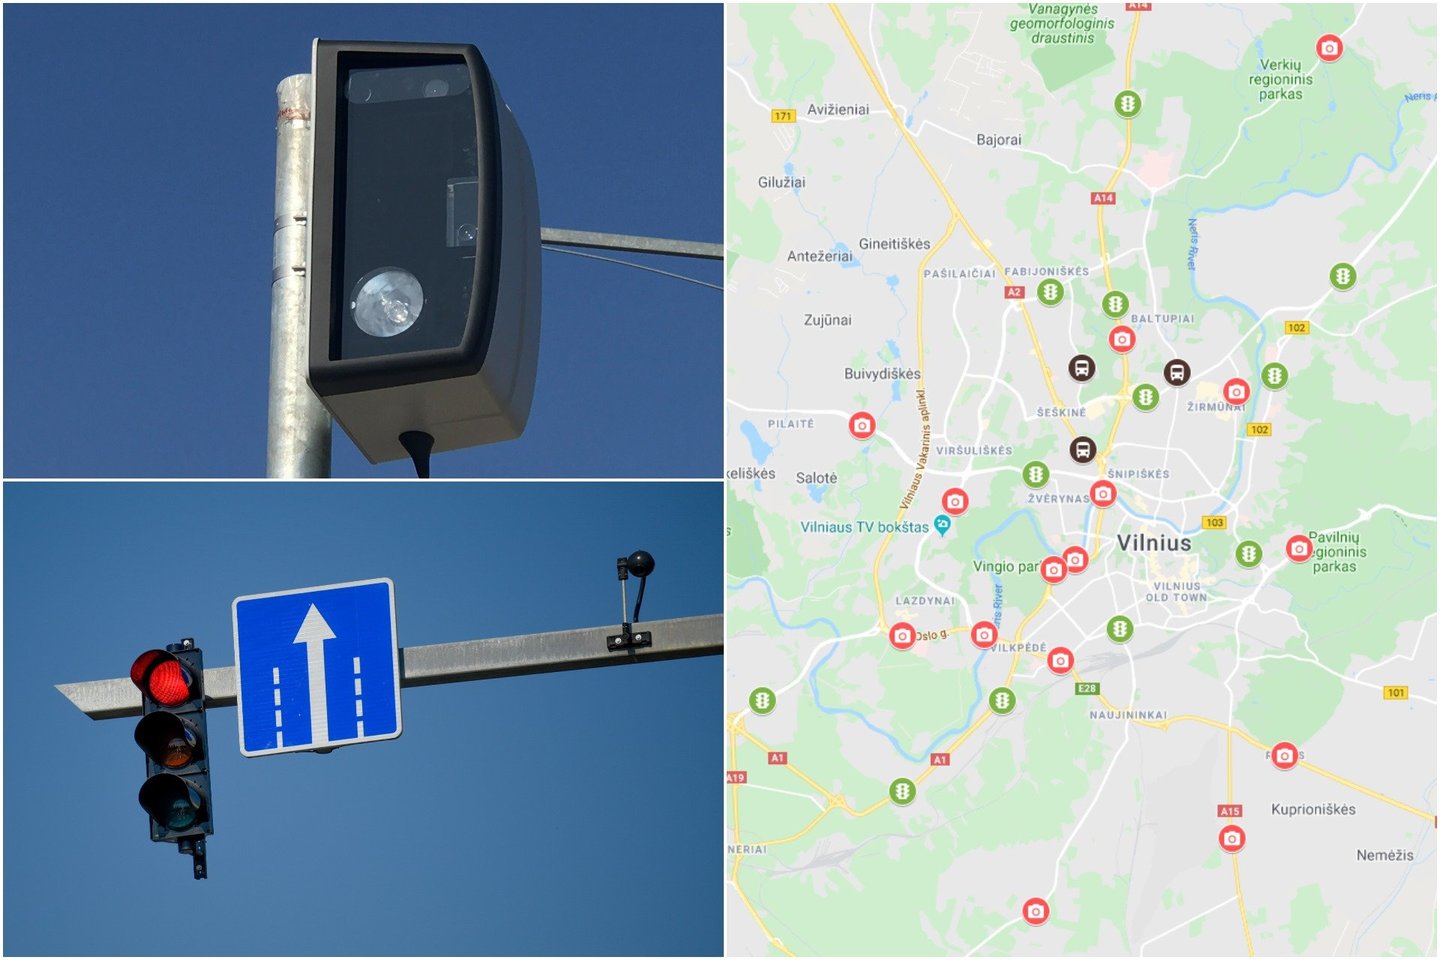  Išmanieji greičio matuokliai sostinės gatvėse bus įrengti jau kitais metais. <br> V. Ščiavinsko, D. Umbraso ir ekrano nuotr.